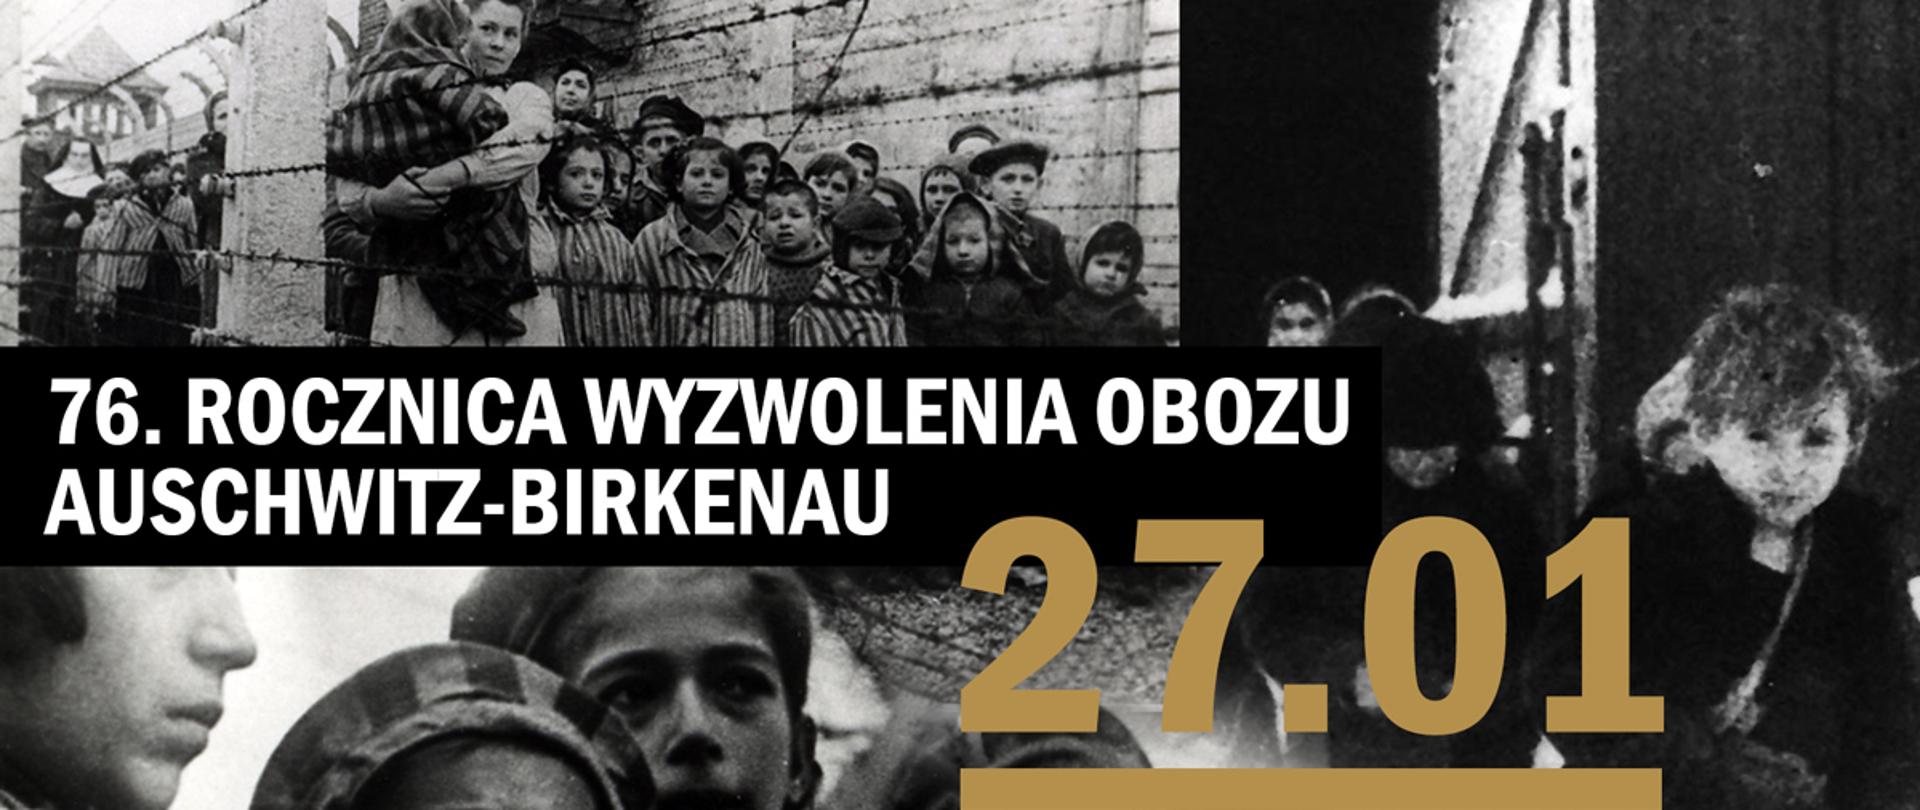 76. rocznica wyzwolenia obozu Auschwitz-Birkenau